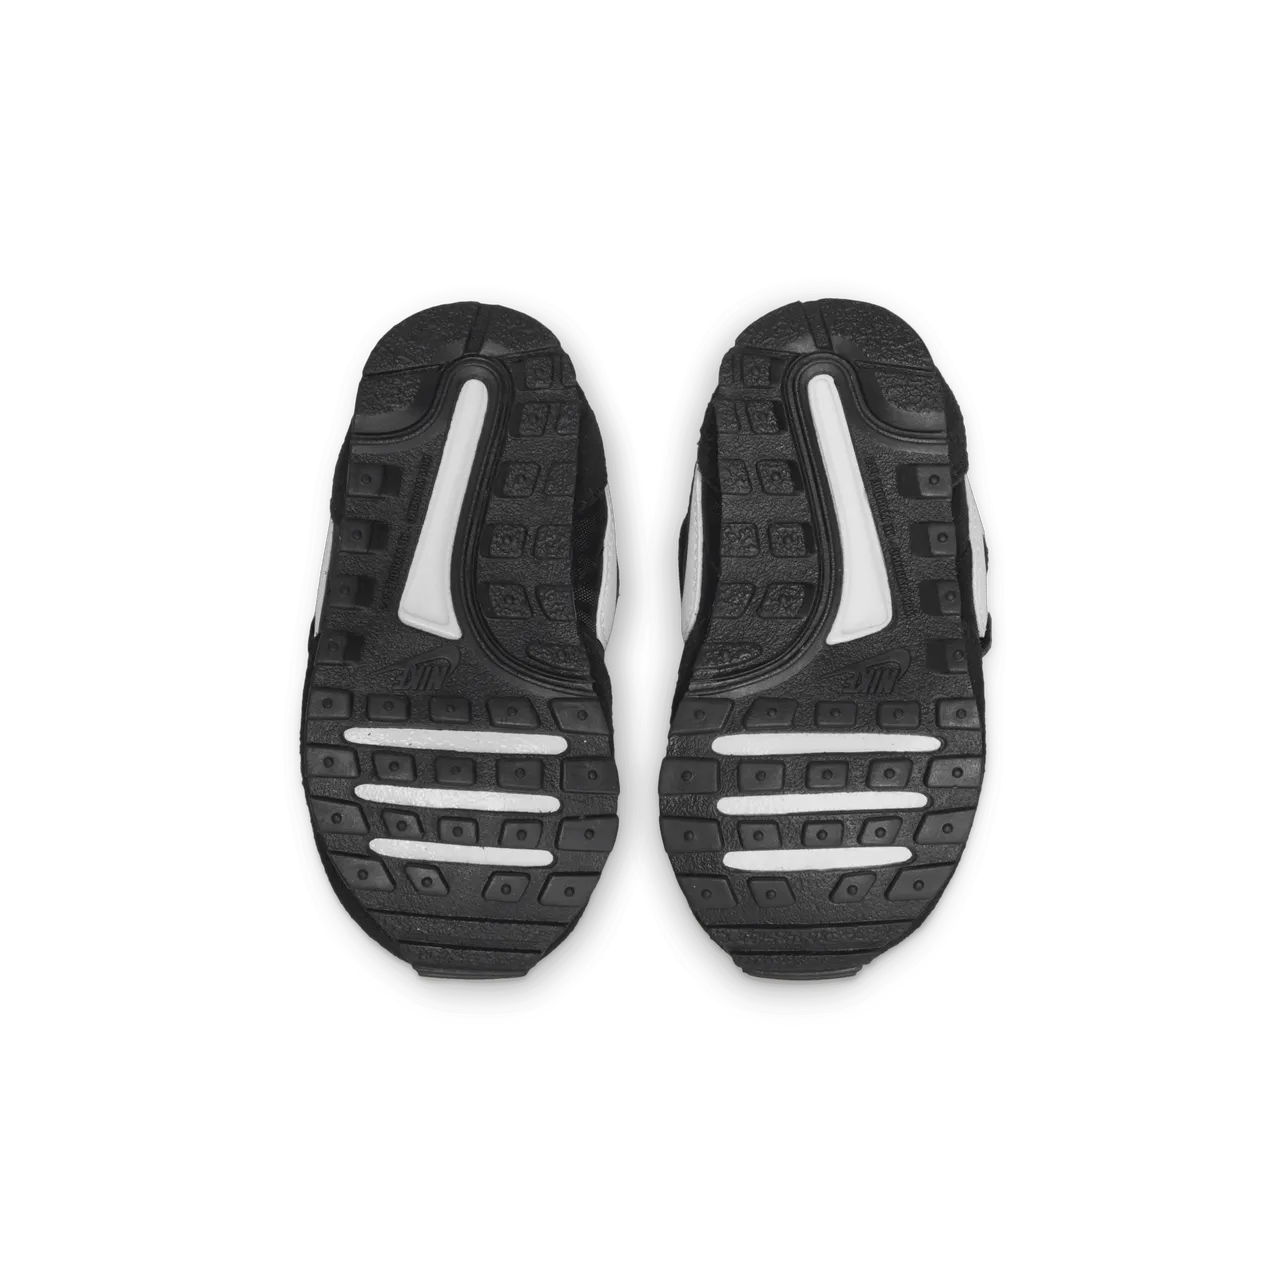 Nike MD Valiant Schuh für Babys und Kleinkinder - Schwarz